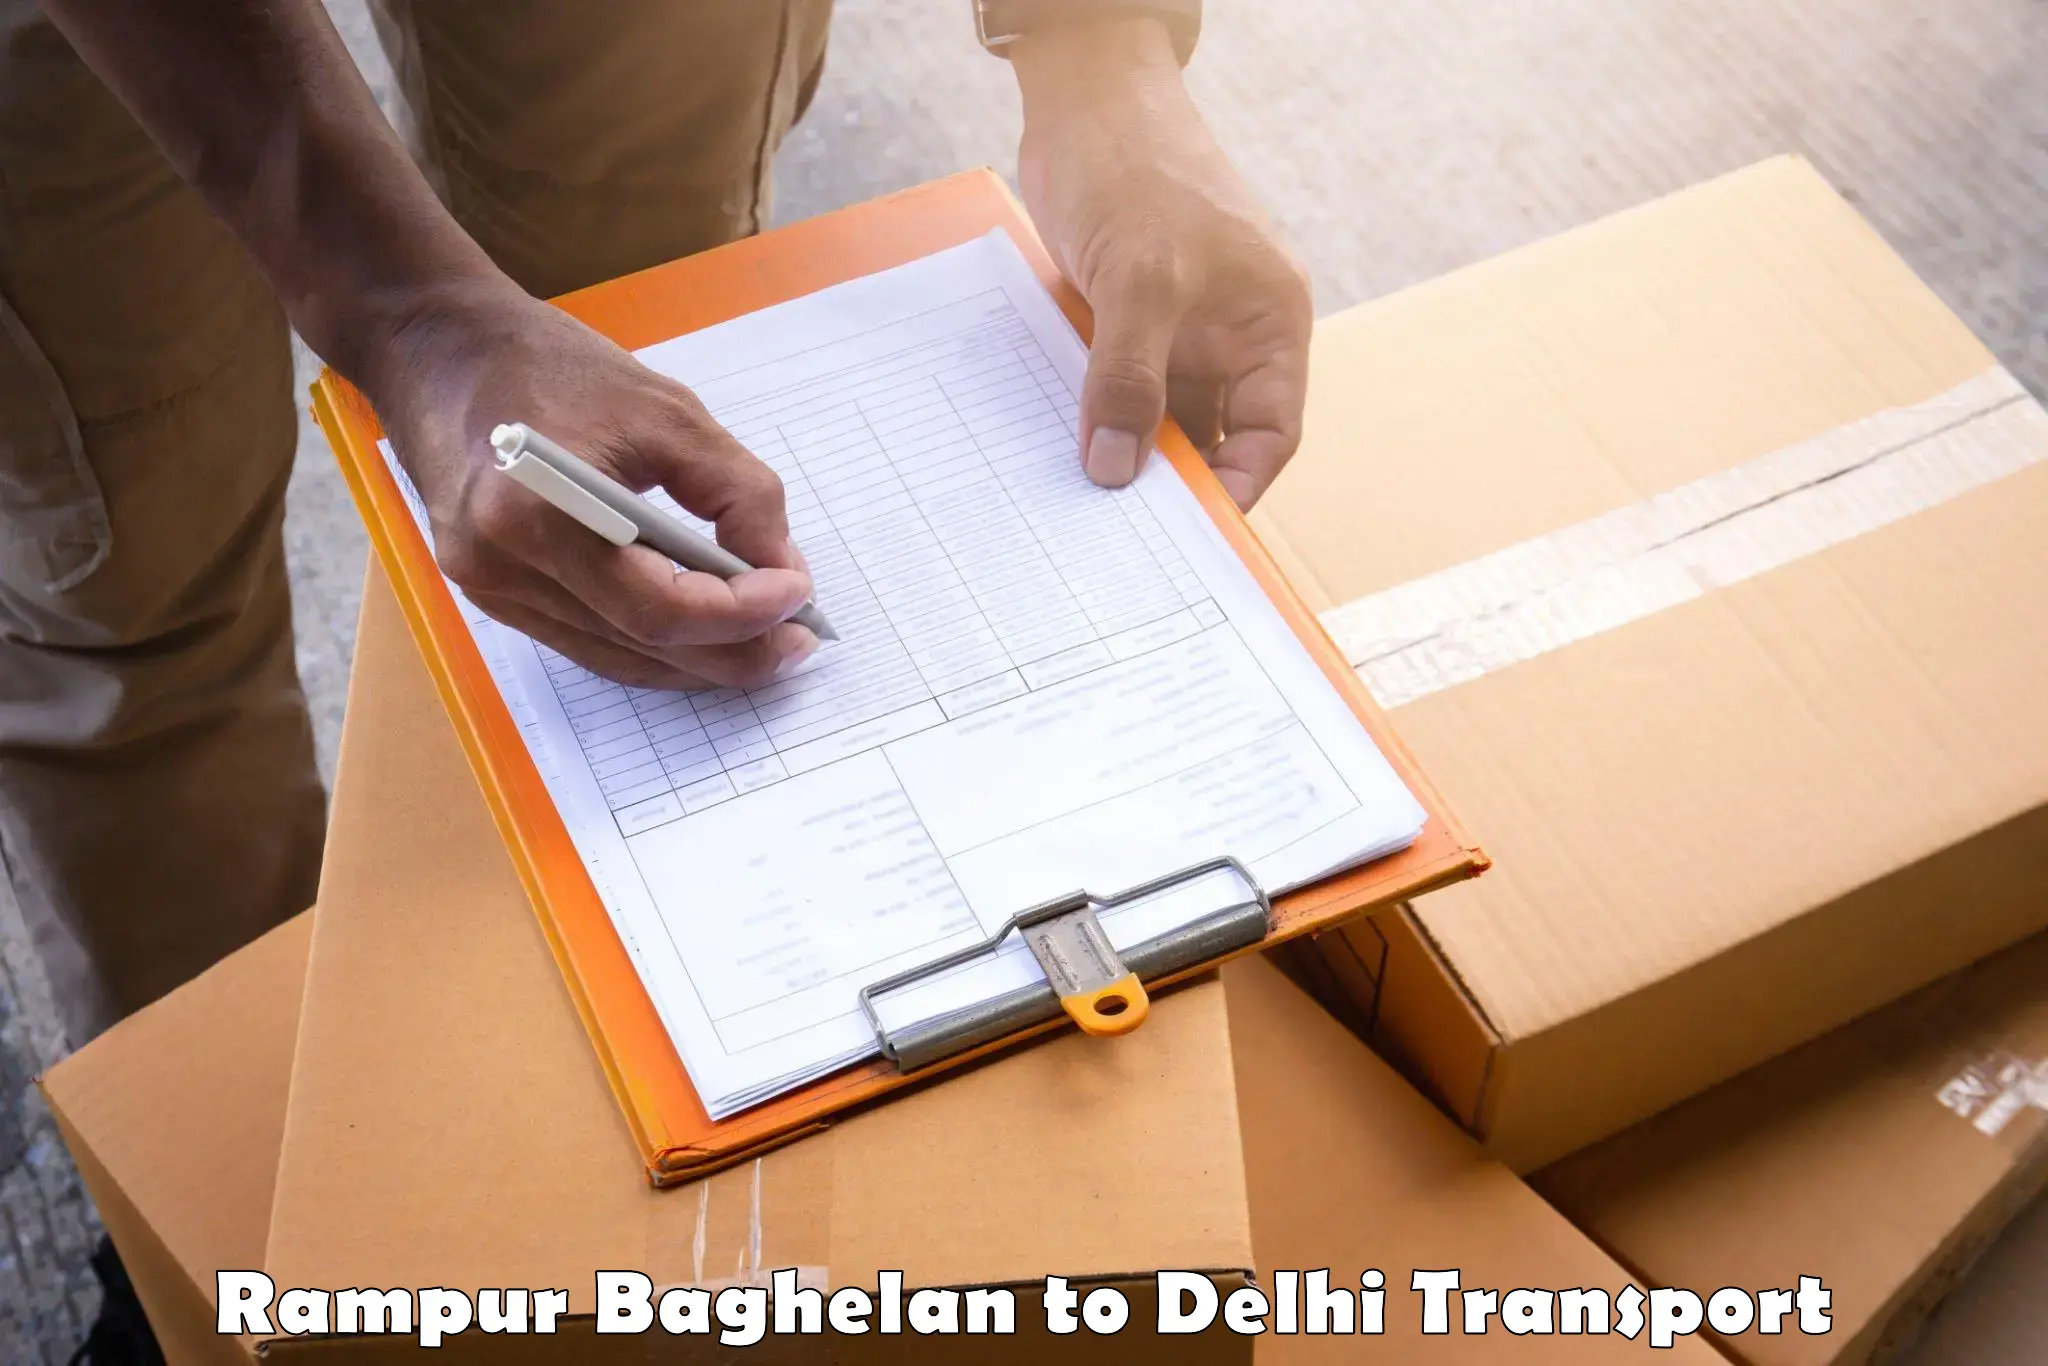 Furniture transport service Rampur Baghelan to Ashok Vihar